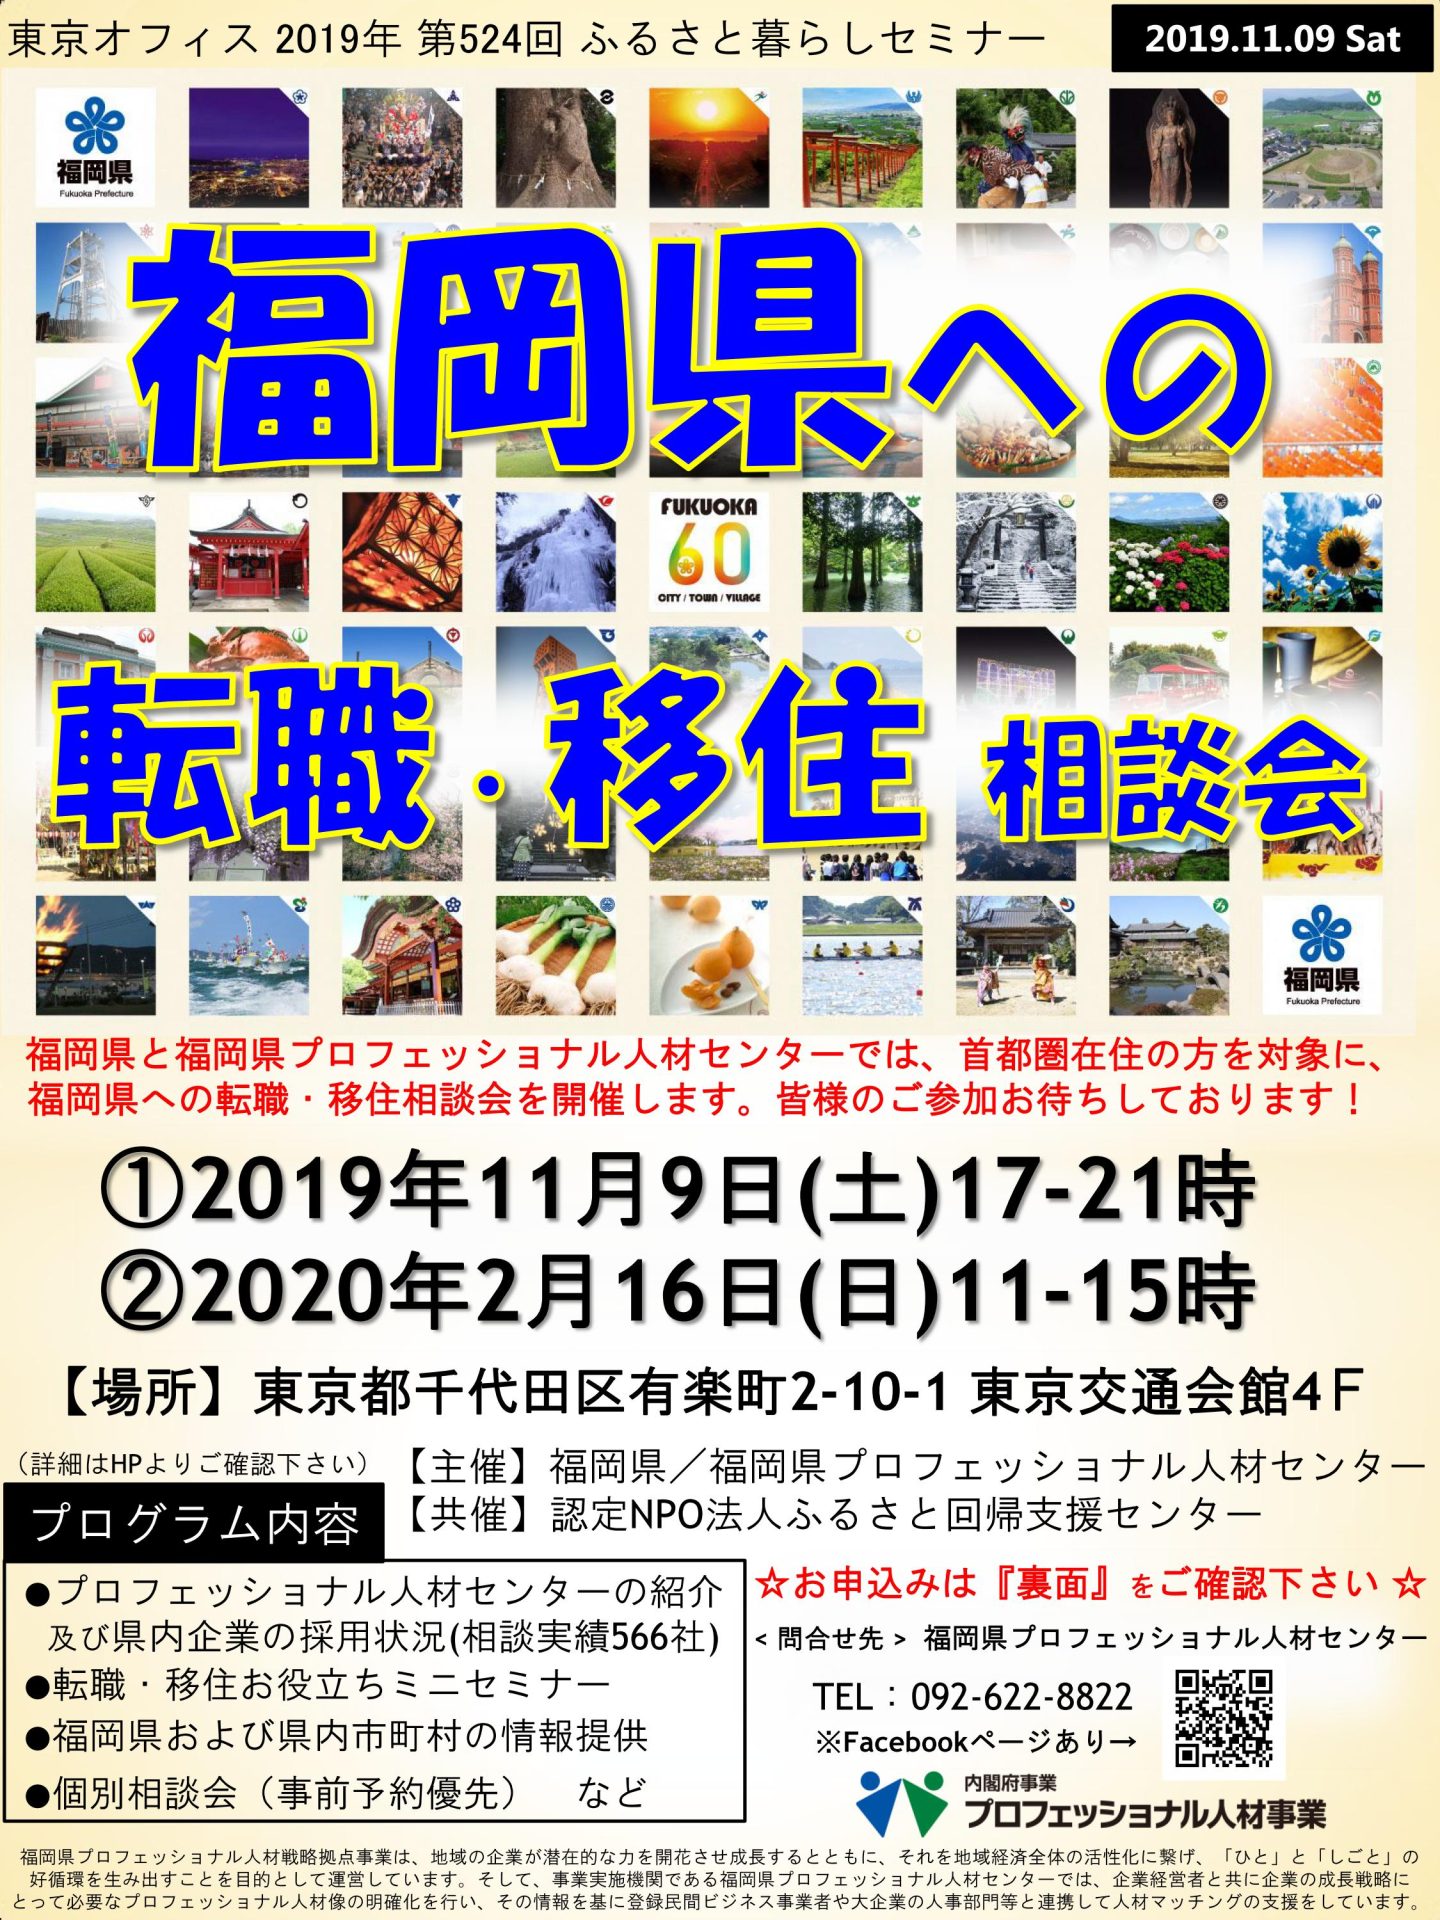 福岡県への転職・移住相談会 | 移住関連イベント情報